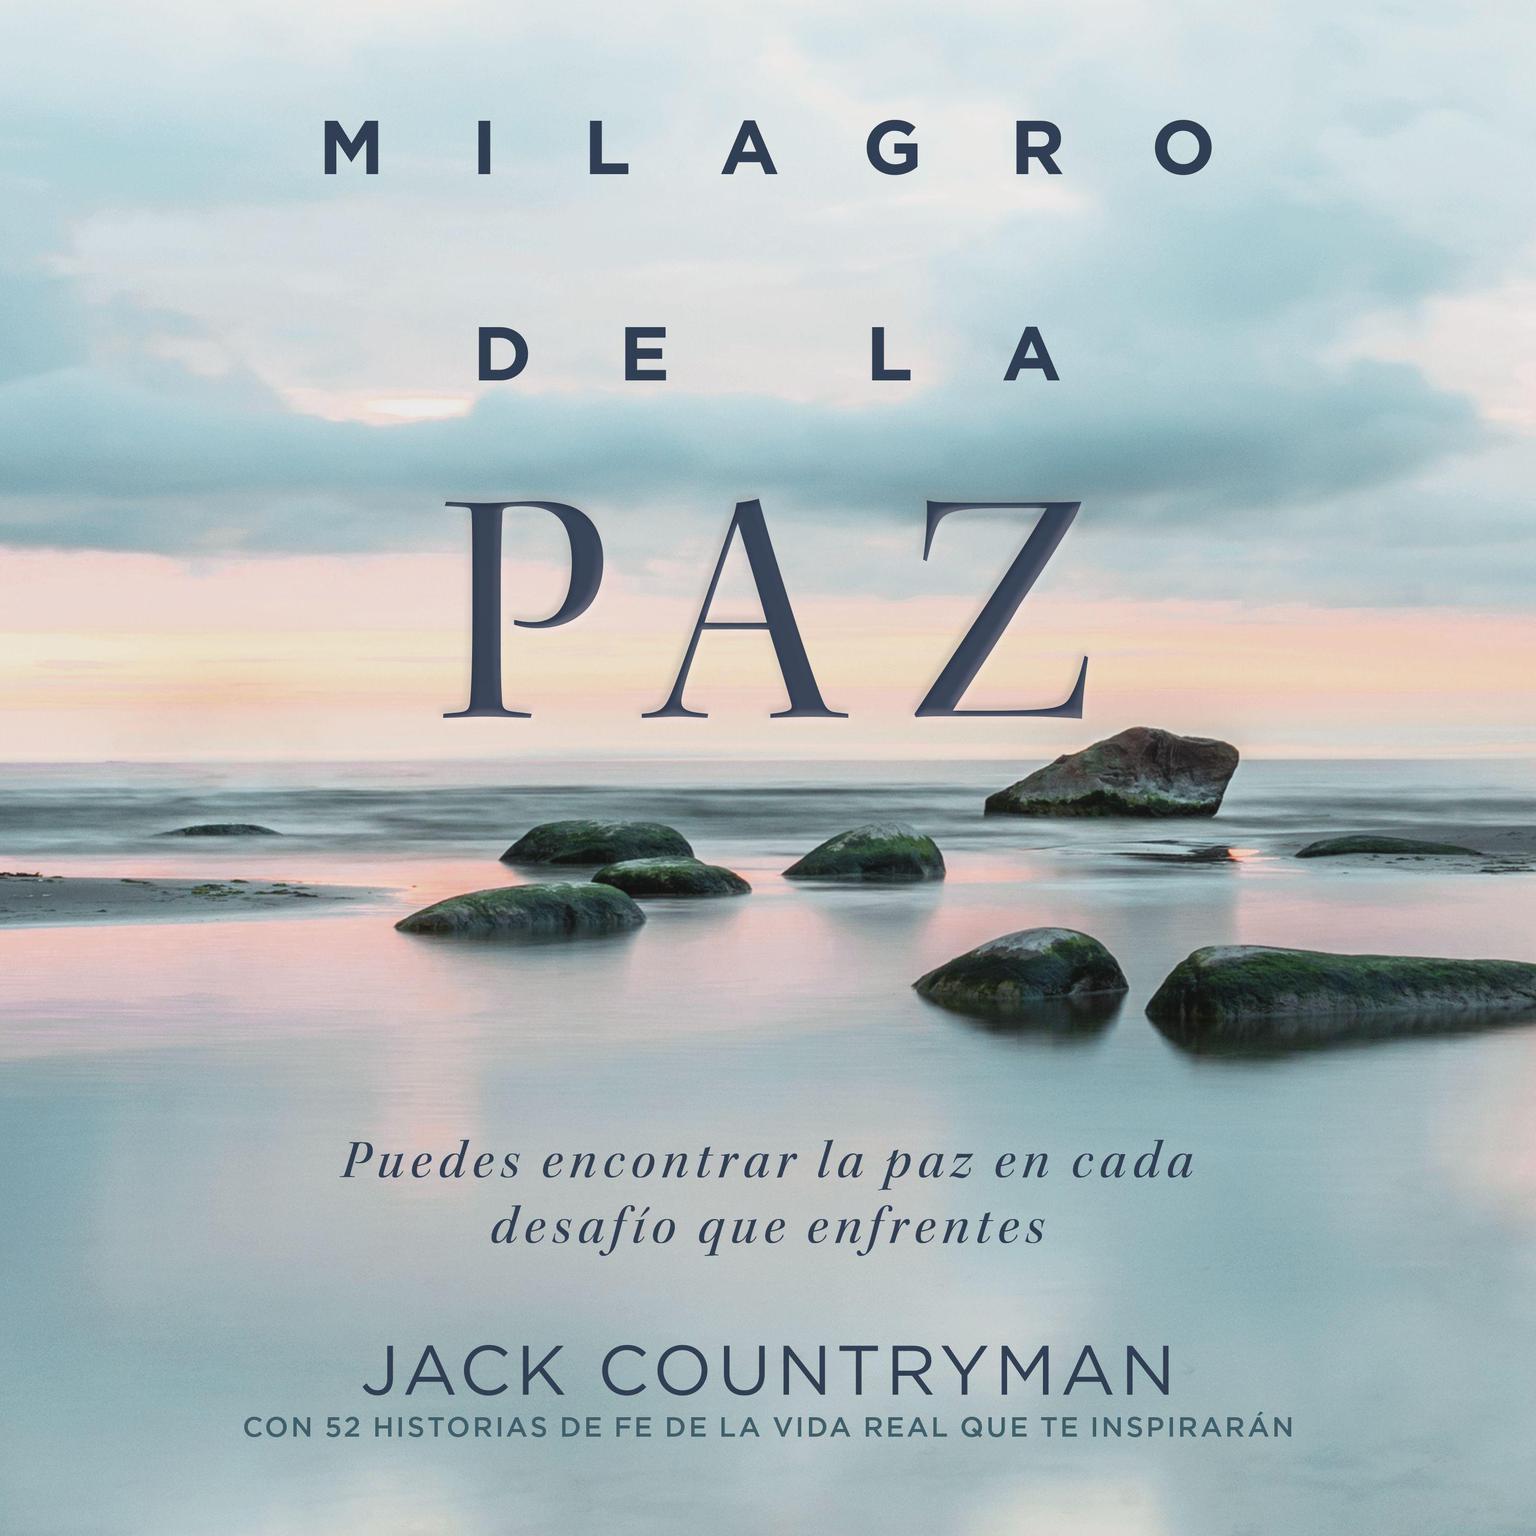 El milagro de la paz: Puedes encontrar la paz en cada desafío que enfrentes Audiobook, by Jack Countryman